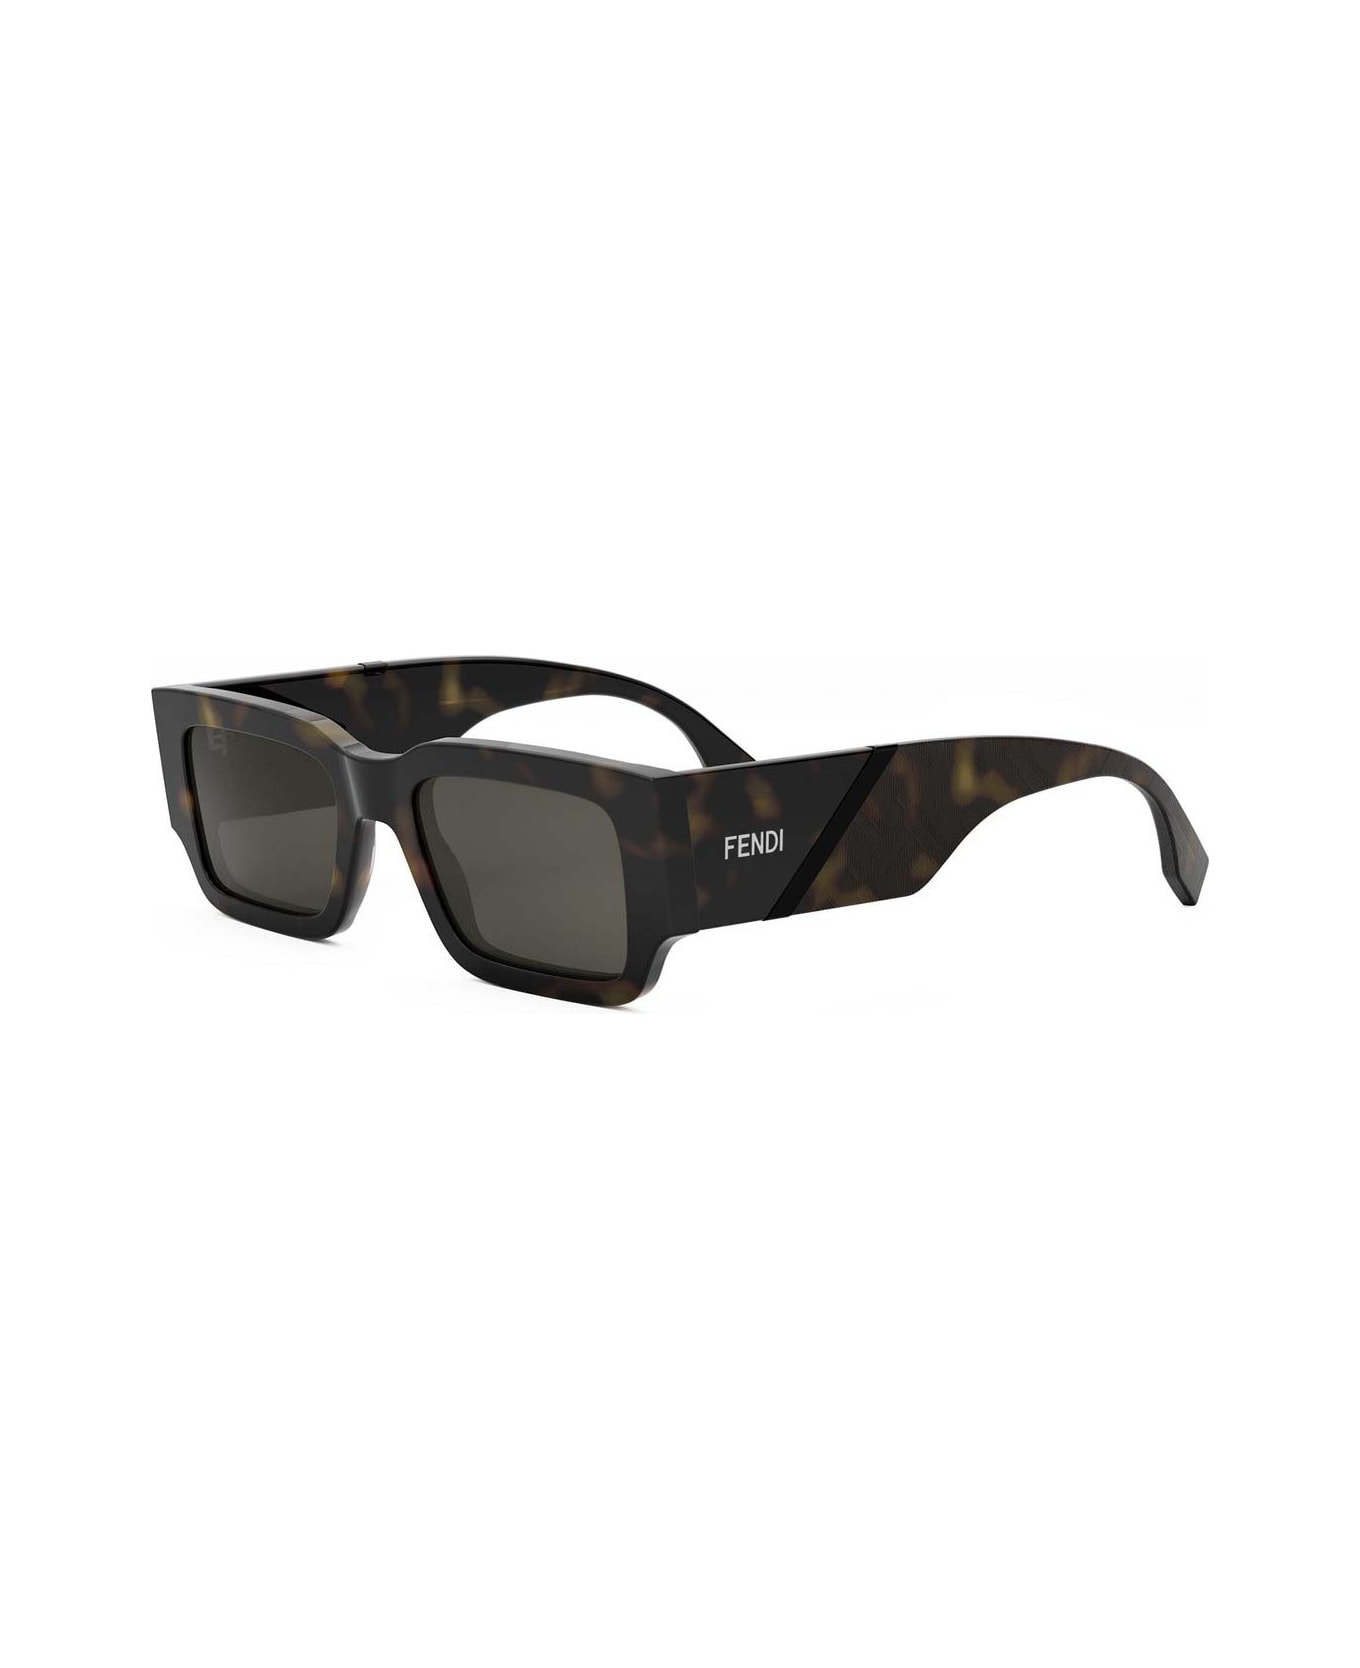 Fendi Eyewear Sunglasses - Havana/Grigio